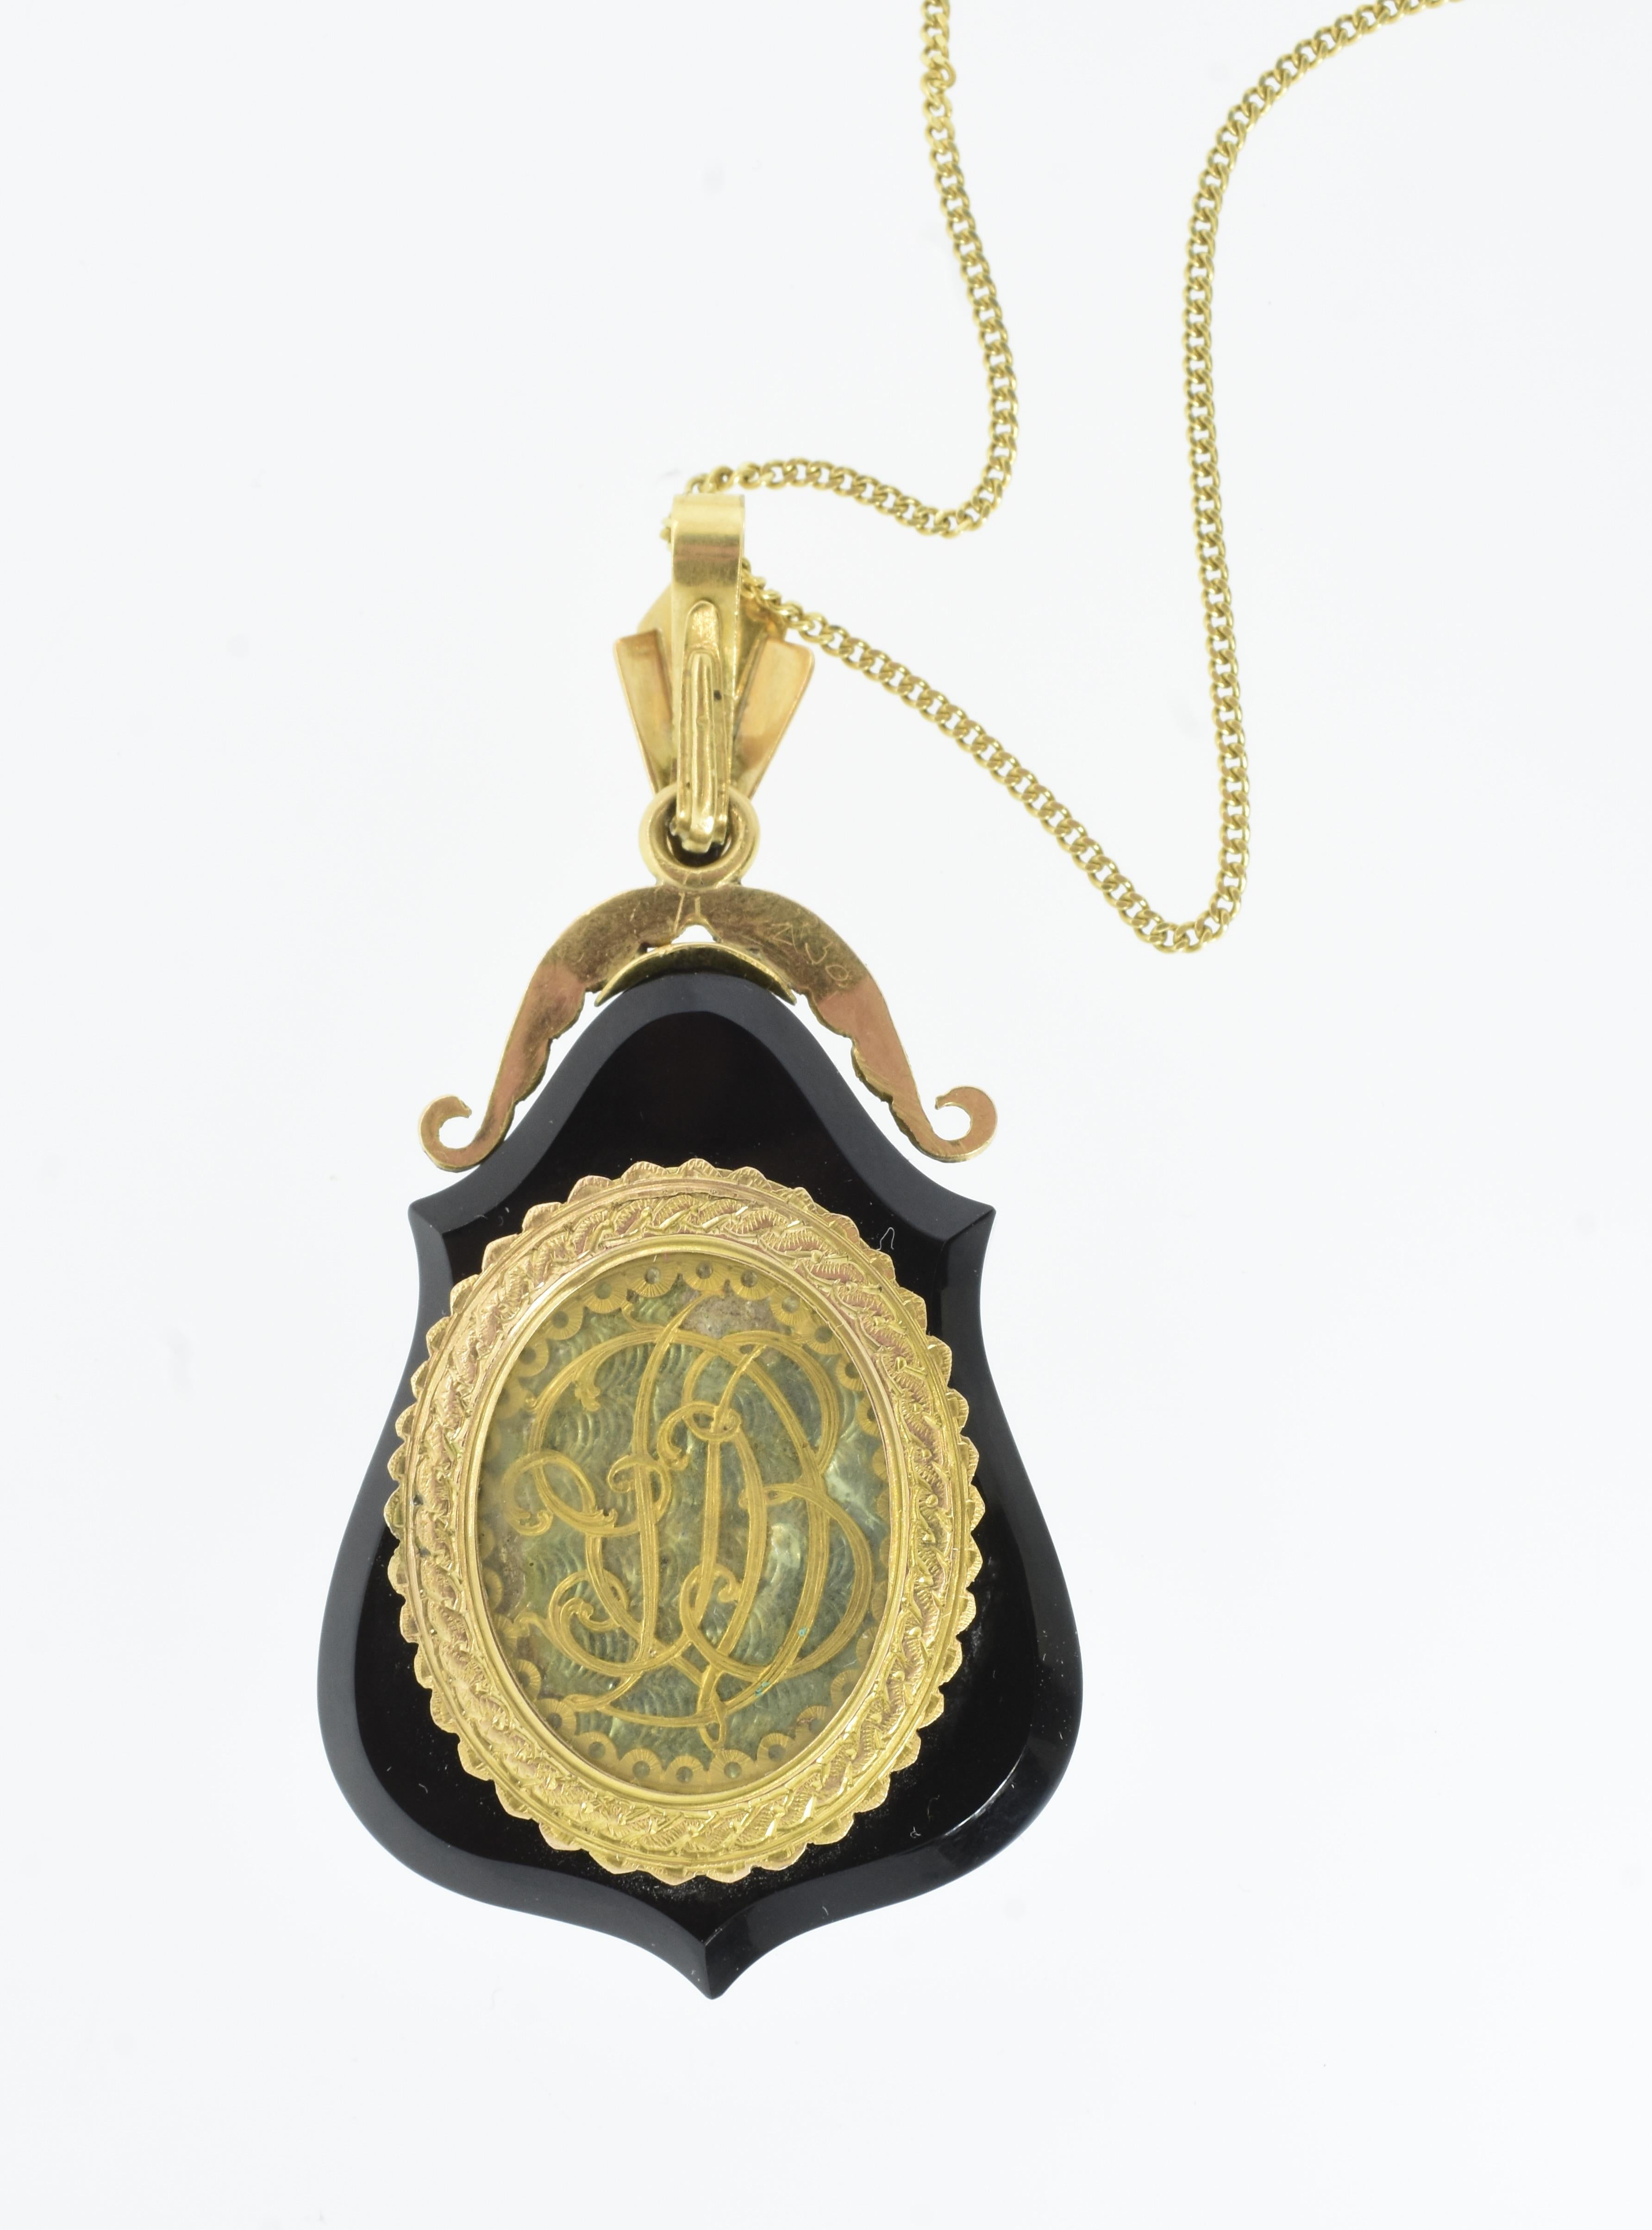 Antique Portrait Enamel, Gold and Rose cut Diamond locket Pendant, c. 1860 For Sale 3